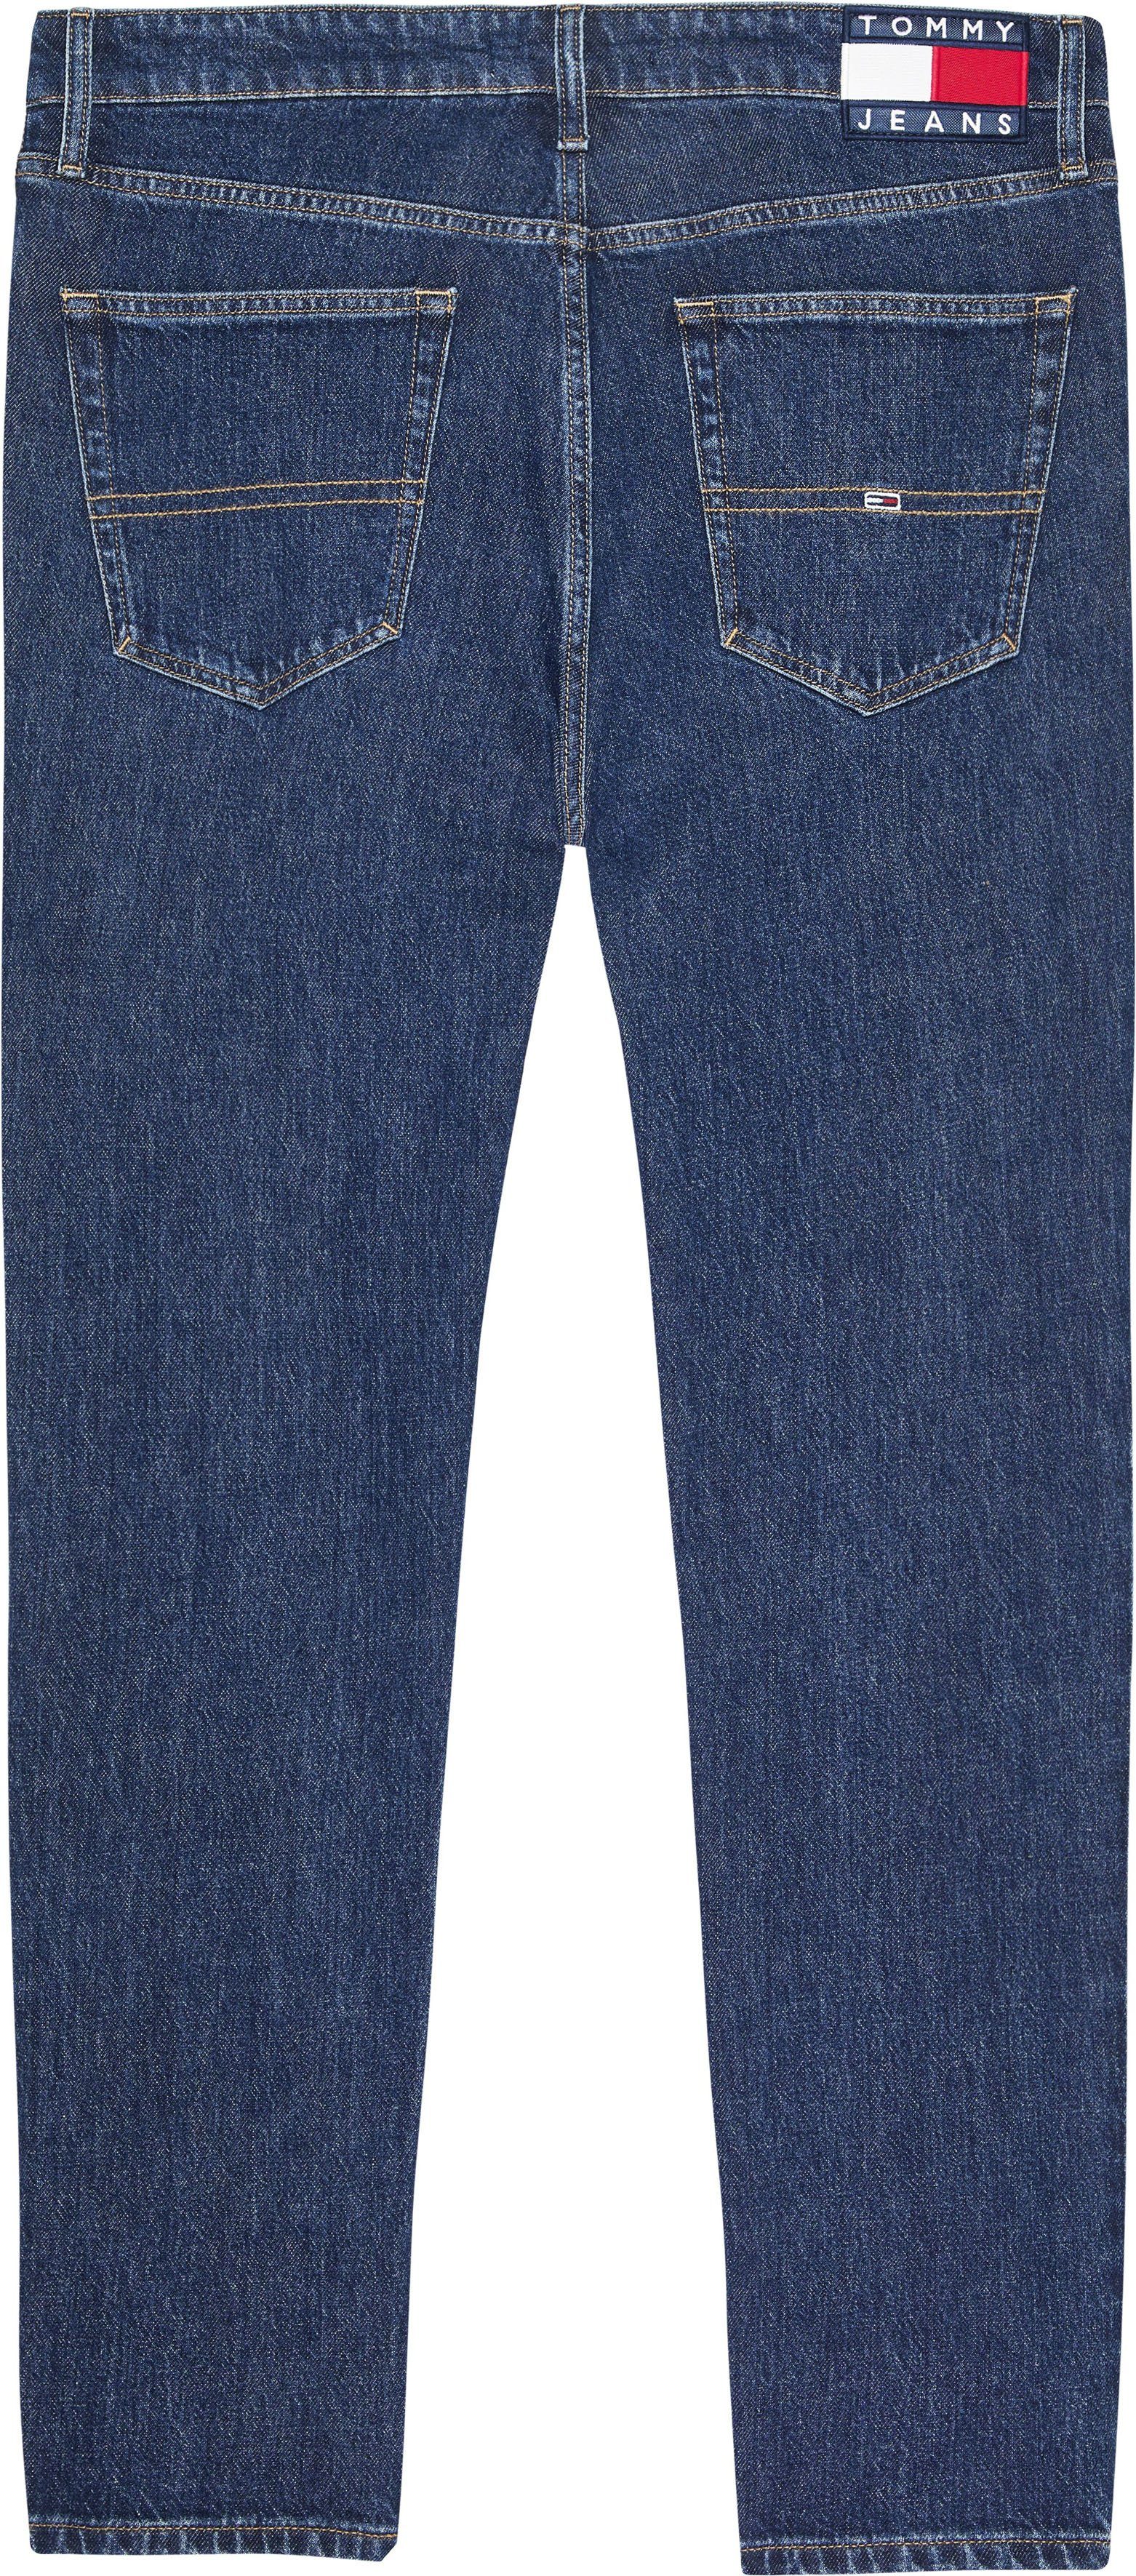 denim TPRD mit Jeans SLIM AUSTIN Lederbadge blue Tommy Slim-fit-Jeans